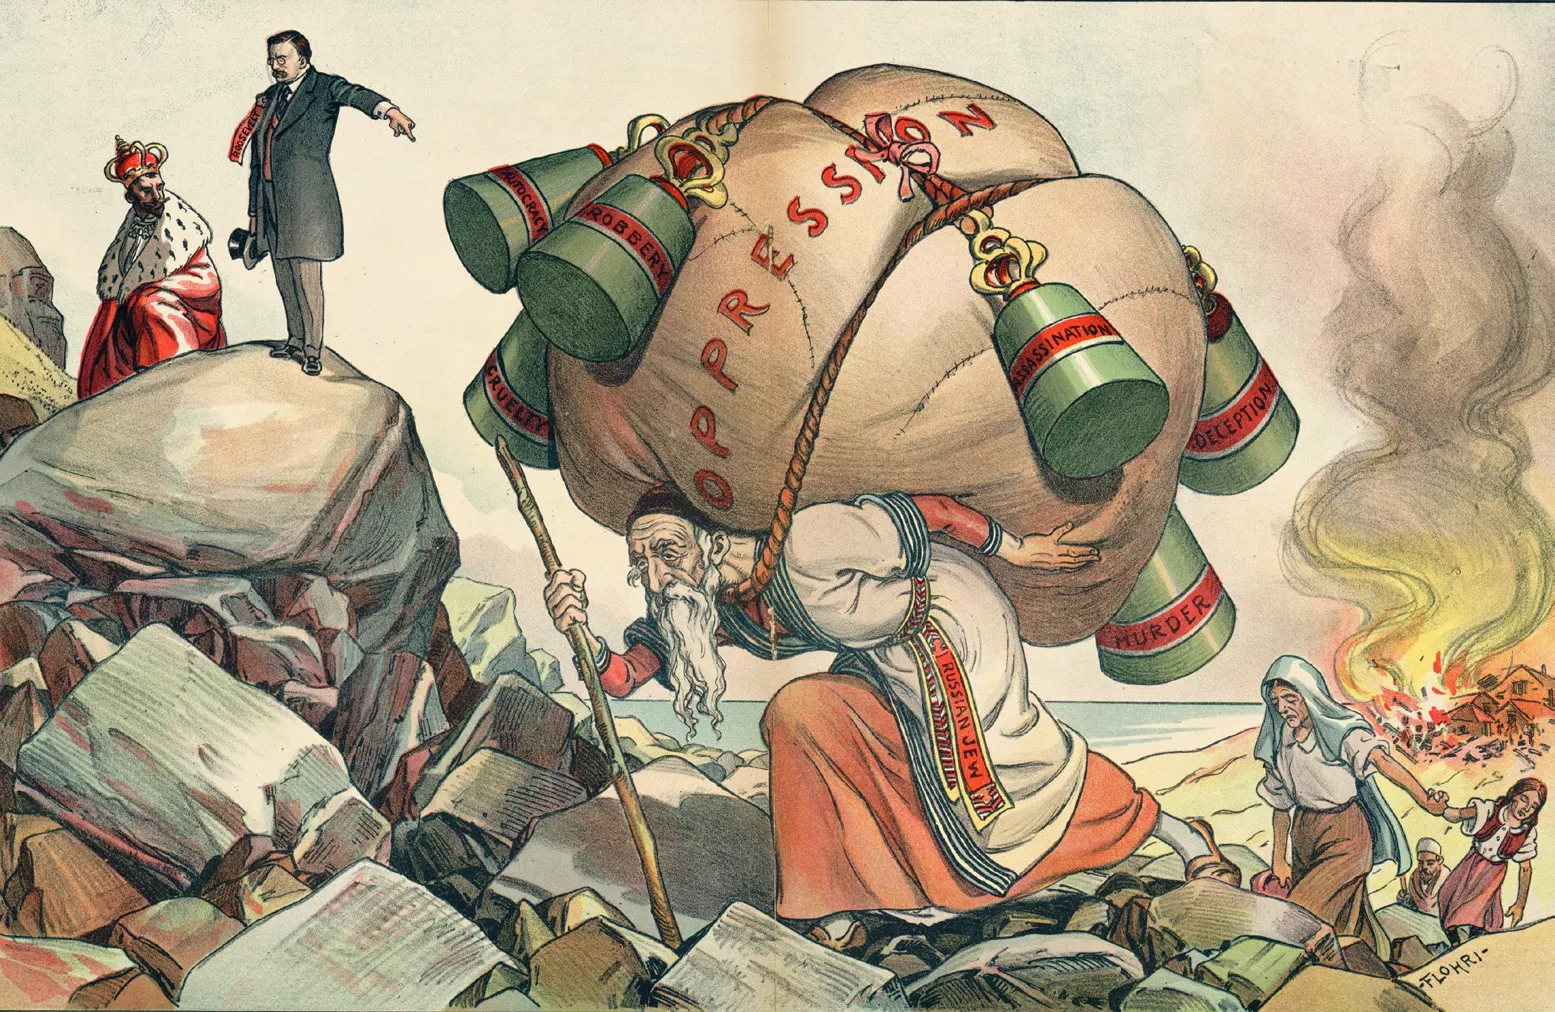 En aquesta il·lustració, un jueu rus, carregat amb el pes de l’opressió, fuig d’un poble cremat. A l’esquerra, el president dels EUA, Theodore Roosevelt, retreu a l’emperador de Rússia, Nicolau II, la seva actitud